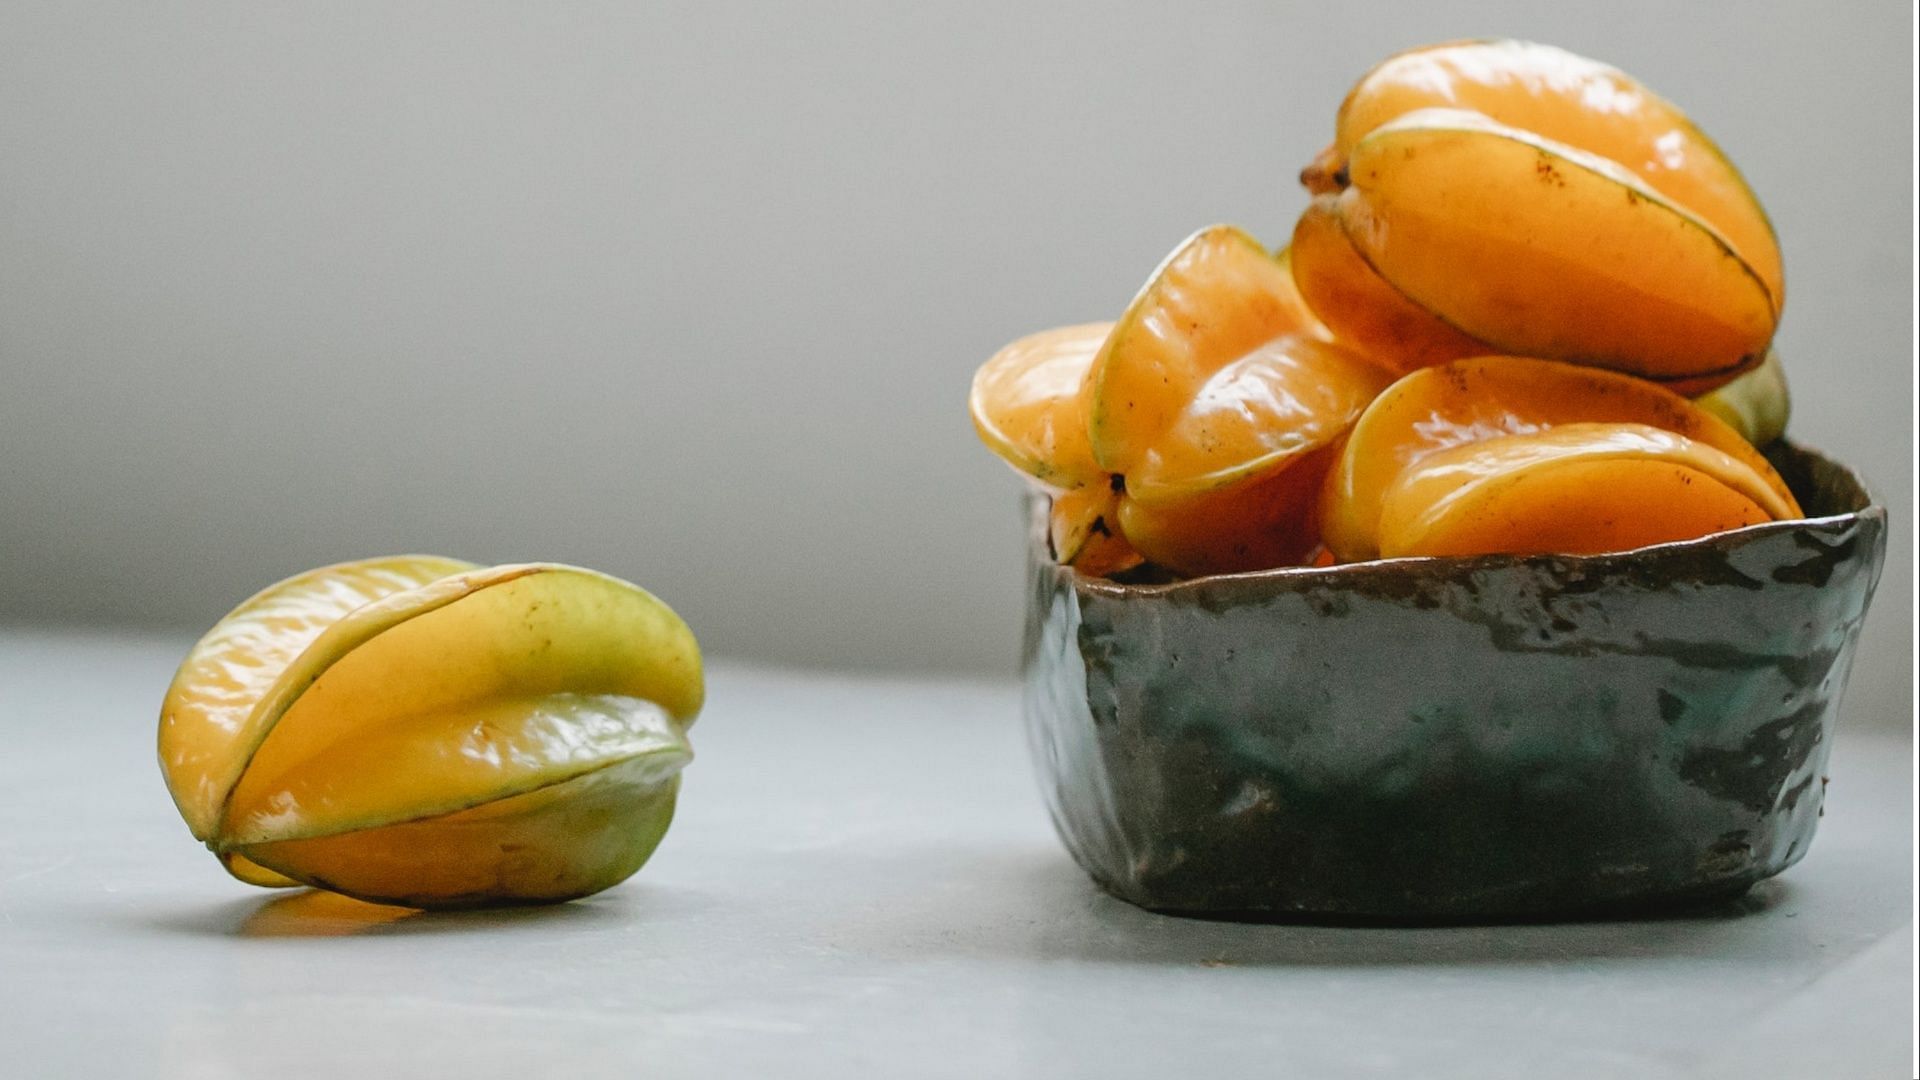 Starfruit contains neurotoxins. (Photo via Pexels/Any Lane)